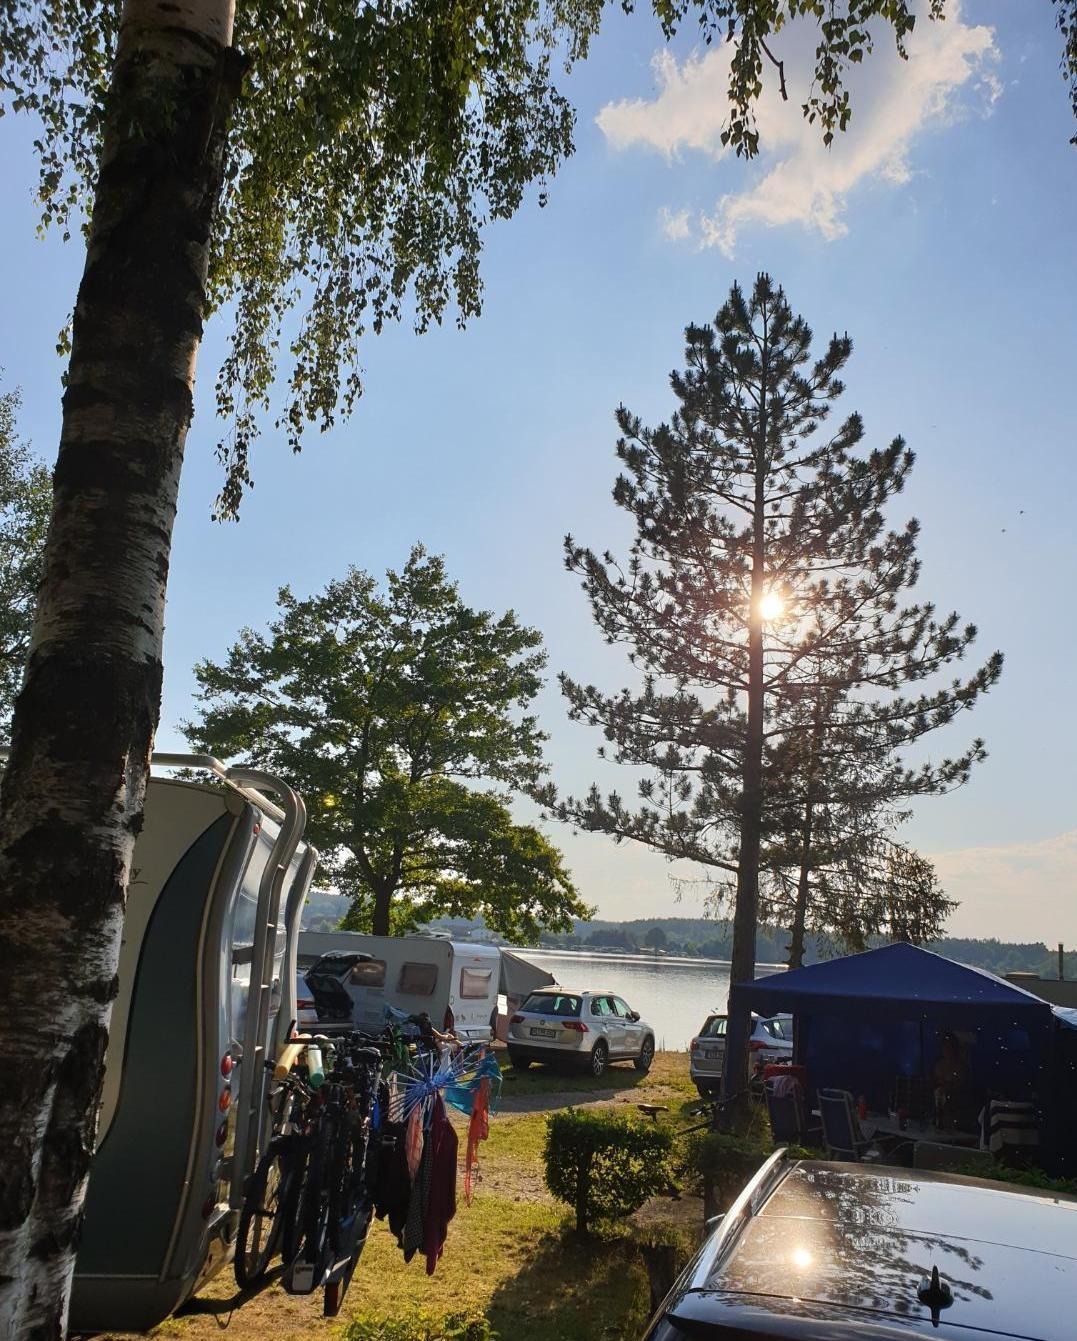 Sonne scheint durch Baum am Campingplatz - Camping am See Bayern